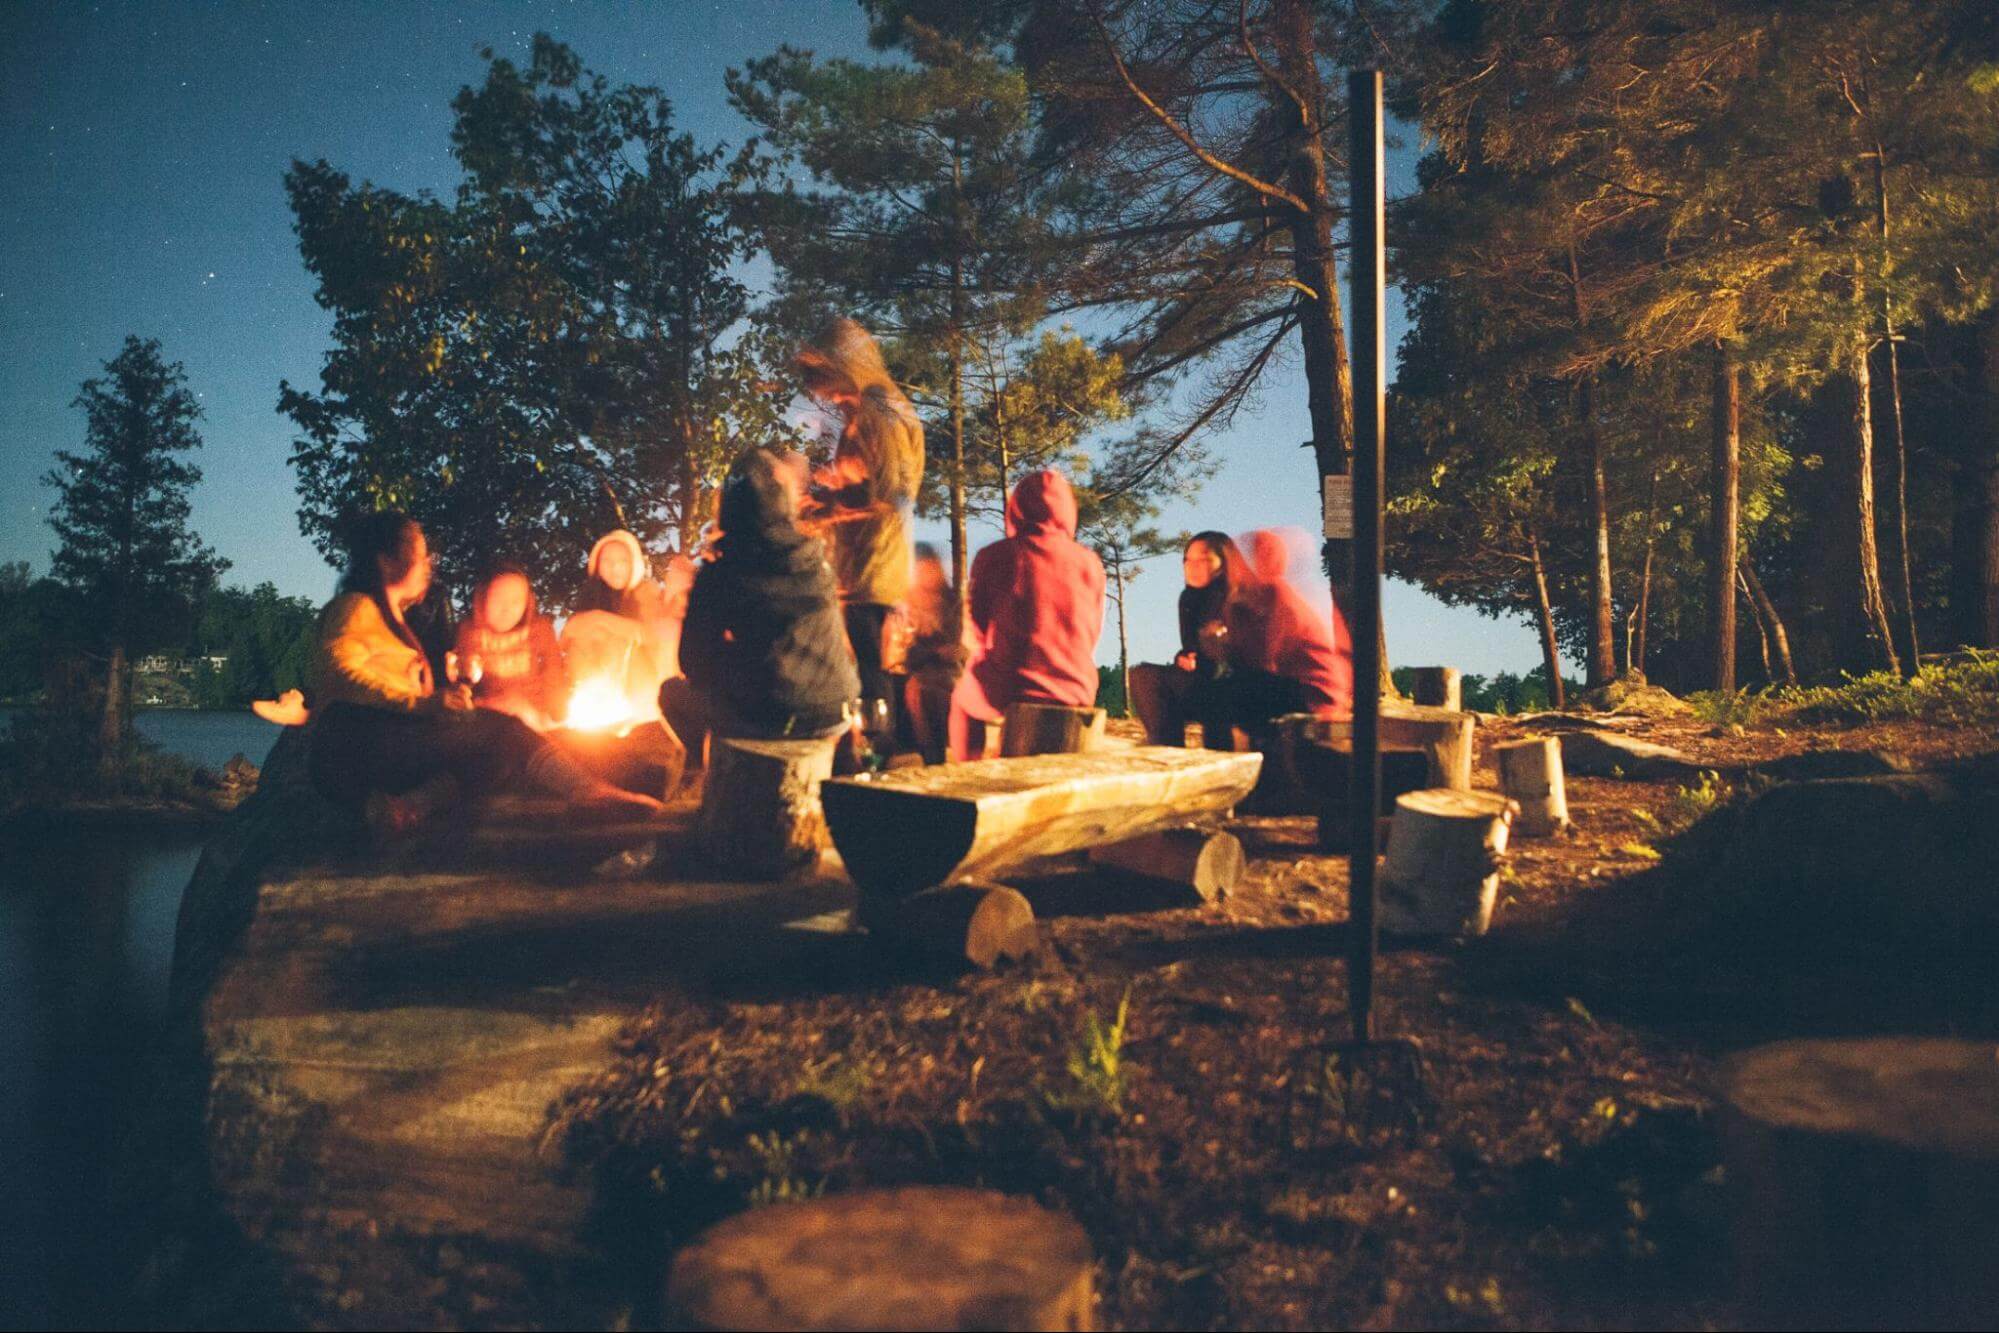 um grupo de pessoas está em um camping, reunidas ao redor de uma fogueira enquanto conversam.